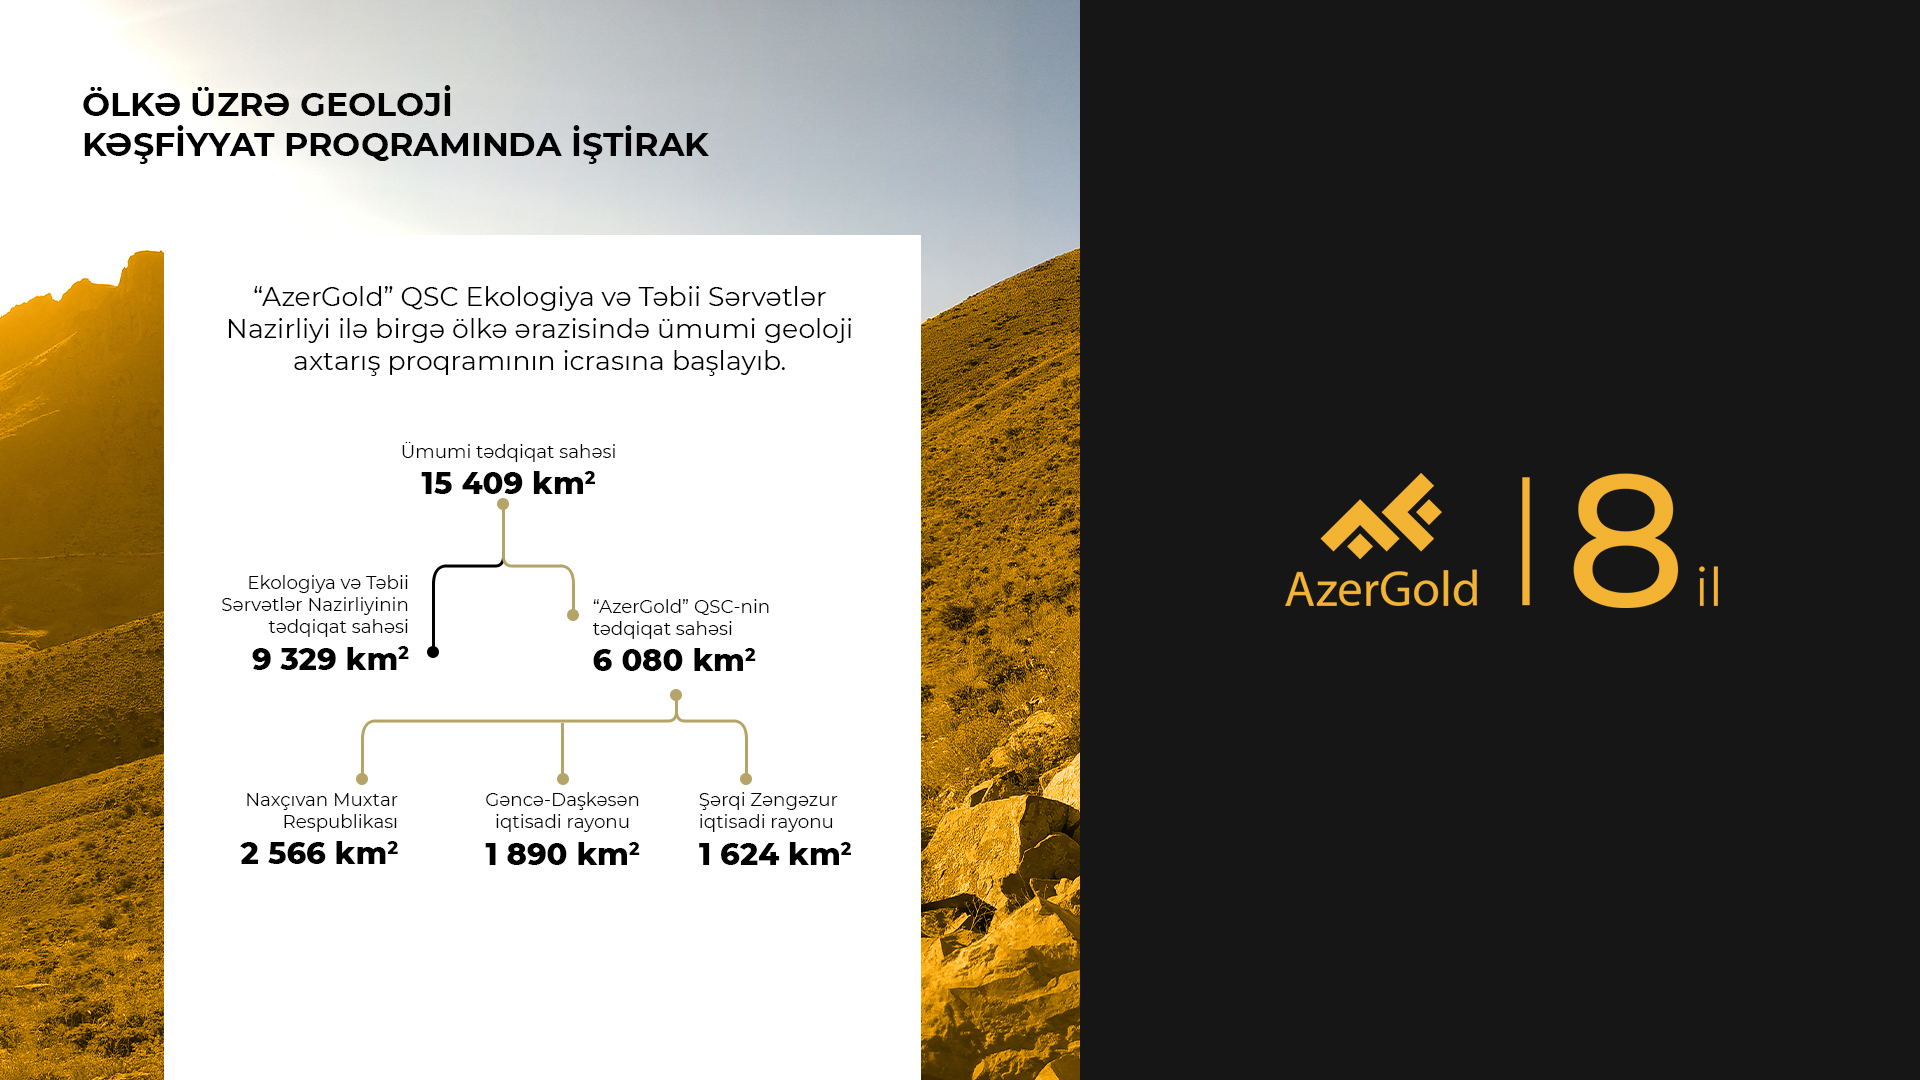 ЗАО «AzerGold»: новые цели в развитии горнодобывающей промышленности (ФОТО)